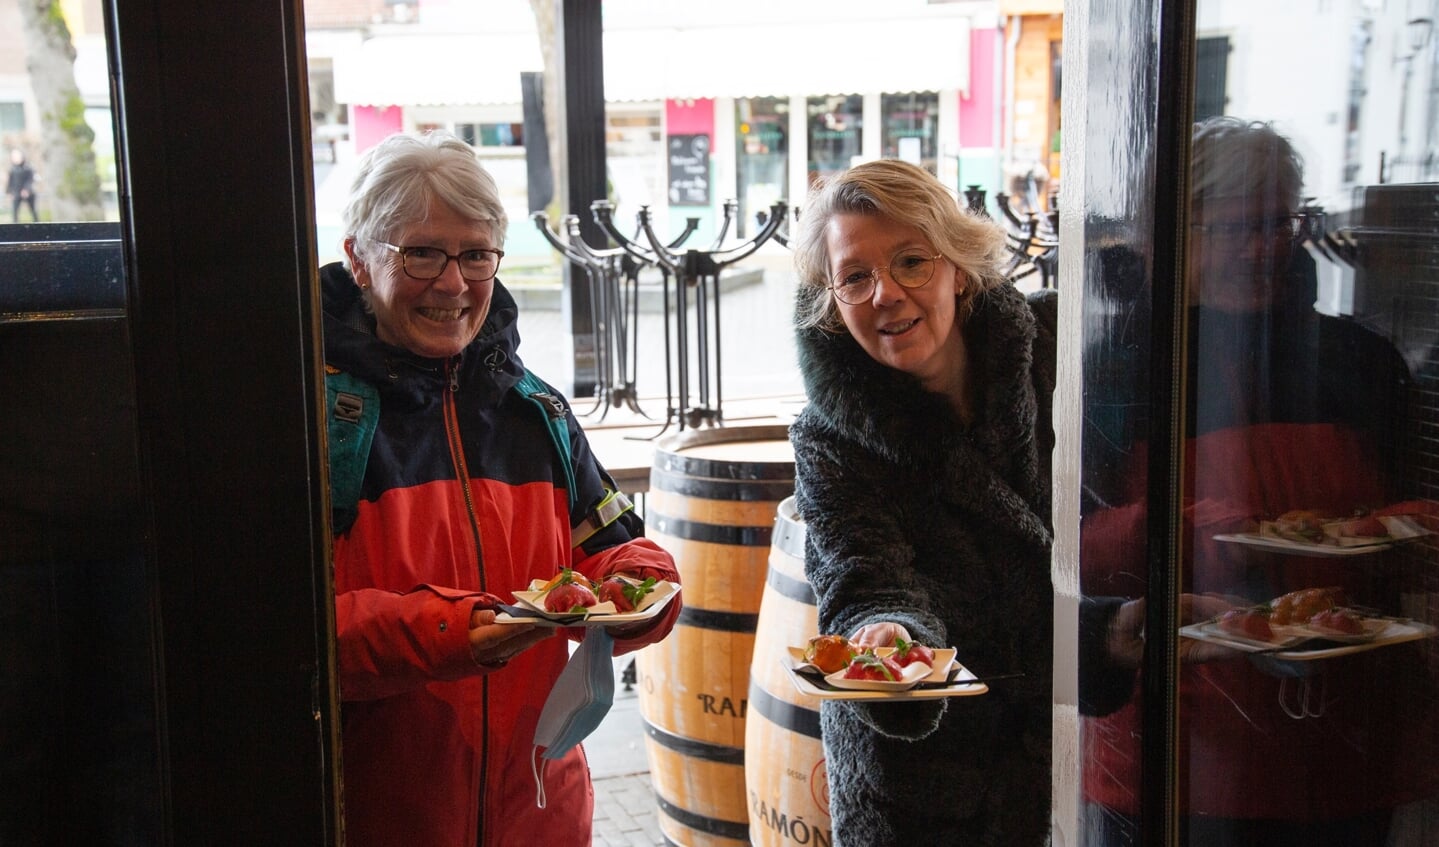 Wandelaars bezoeken cafe's in Barneveld en Voorthuizen (corona...)